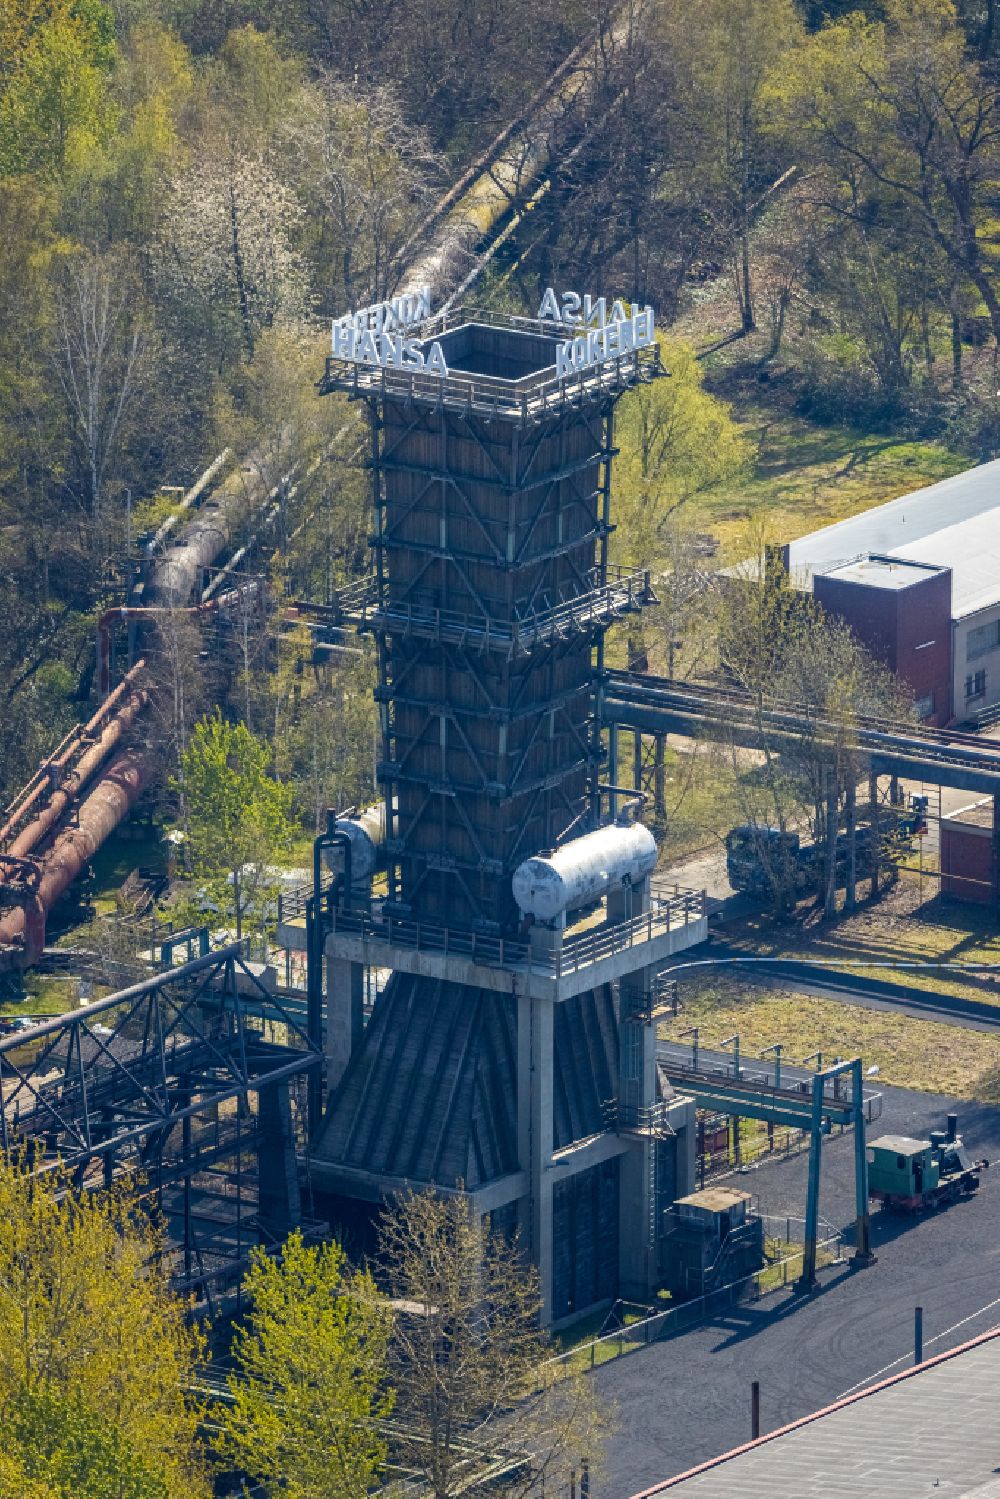 Luftbild Dortmund - Industrie- Denkmal der ehemaligen Kokerei Hansa in Dortmund im Bundesland Nordrhein-Westfalen, Deutschland